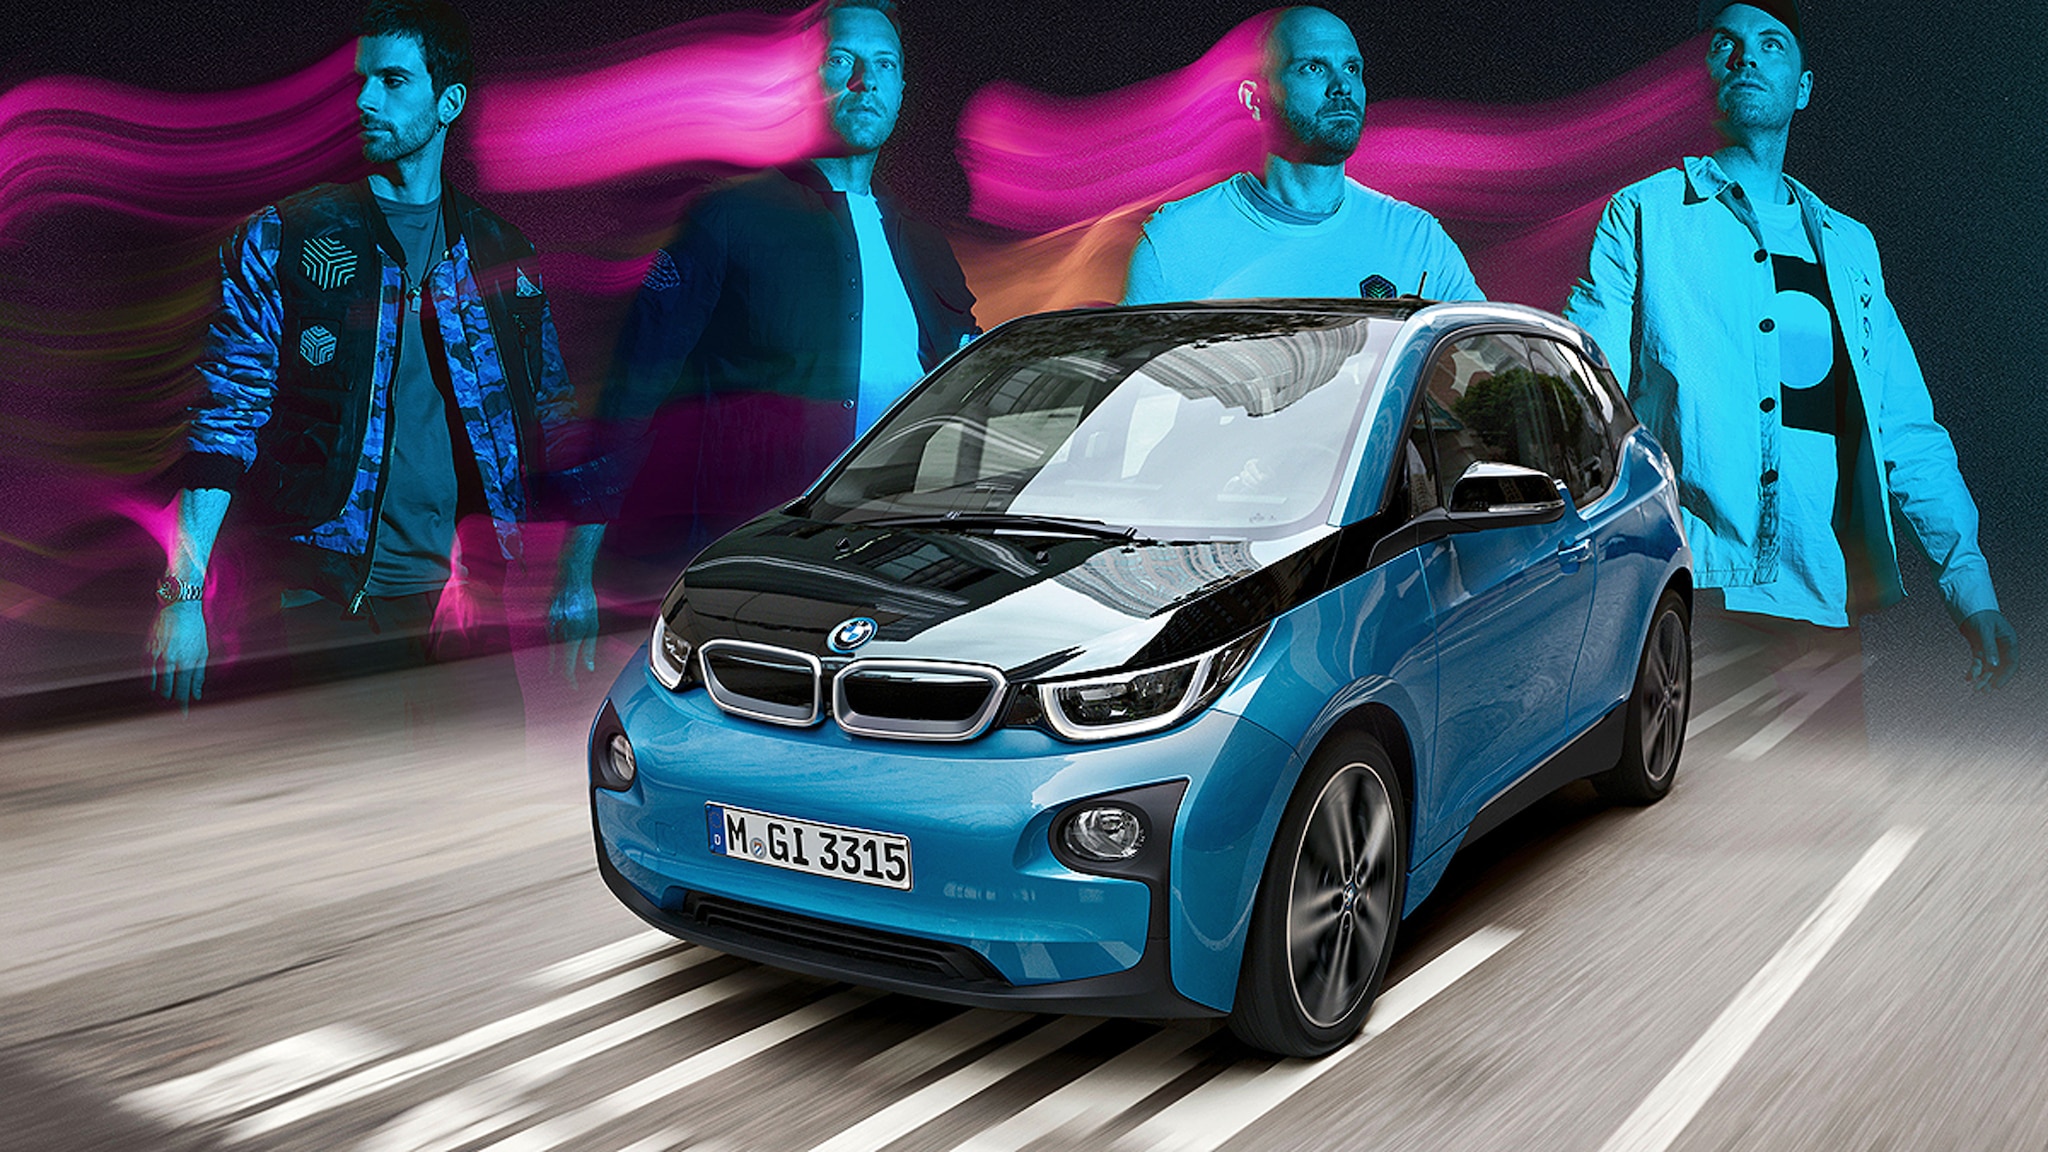 BMW-i3-Akkus machen die Welttournee von Coldplay nachhaltig - AUTO BILD